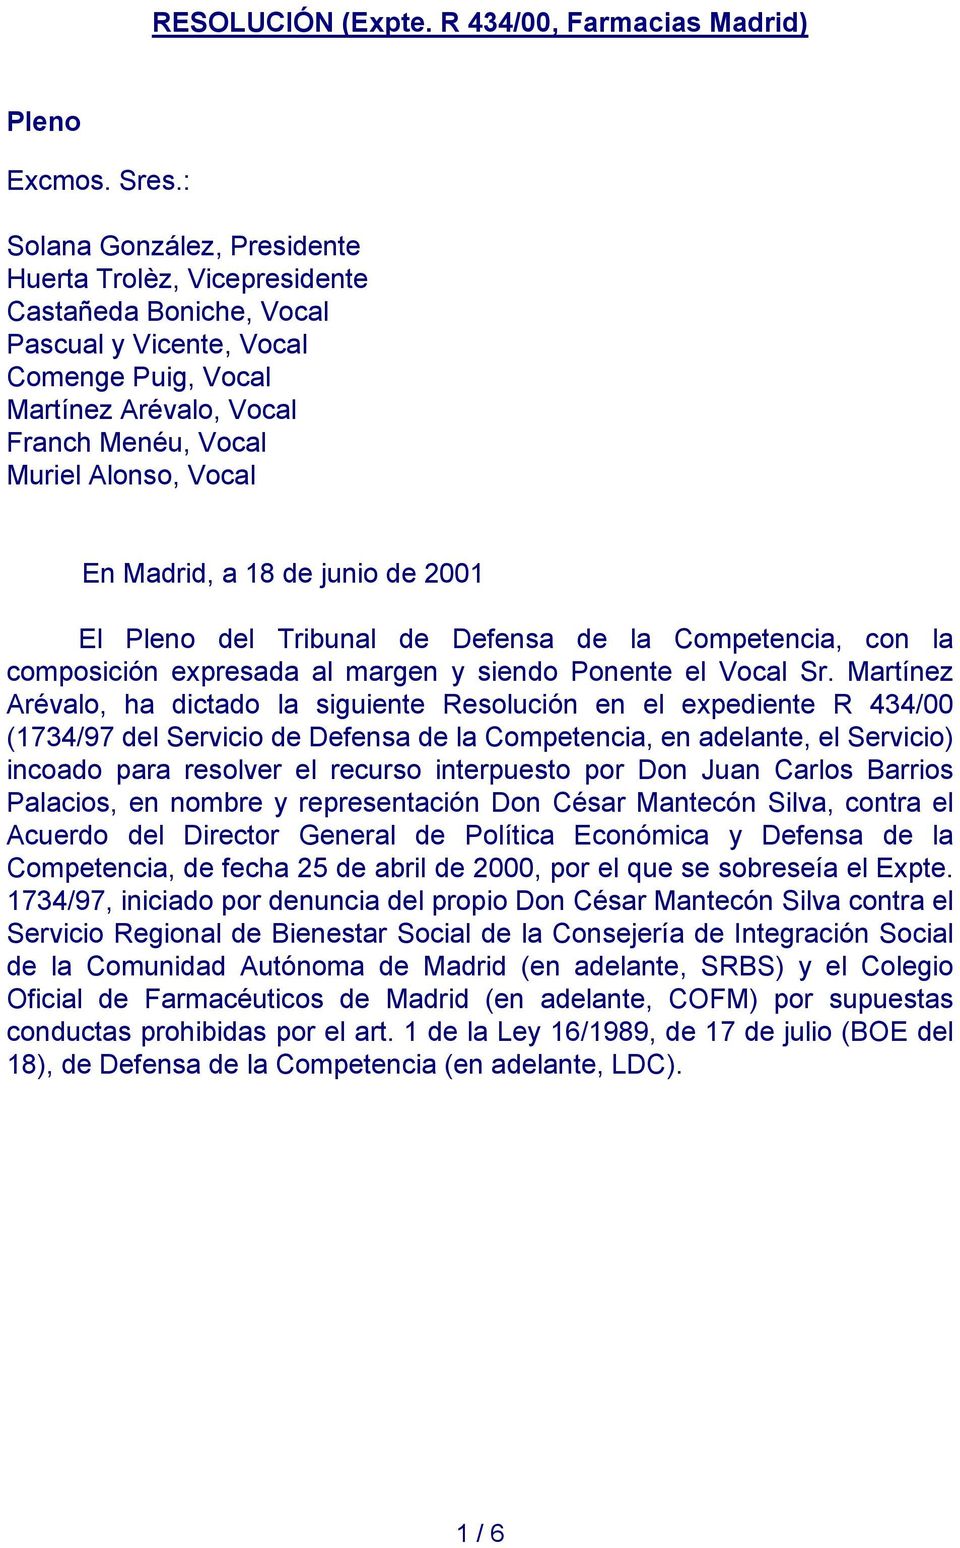 Madrid, a 18 de junio de 2001 El Pleno del Tribunal de Defensa de la Competencia, con la composición expresada al margen y siendo Ponente el Vocal Sr.